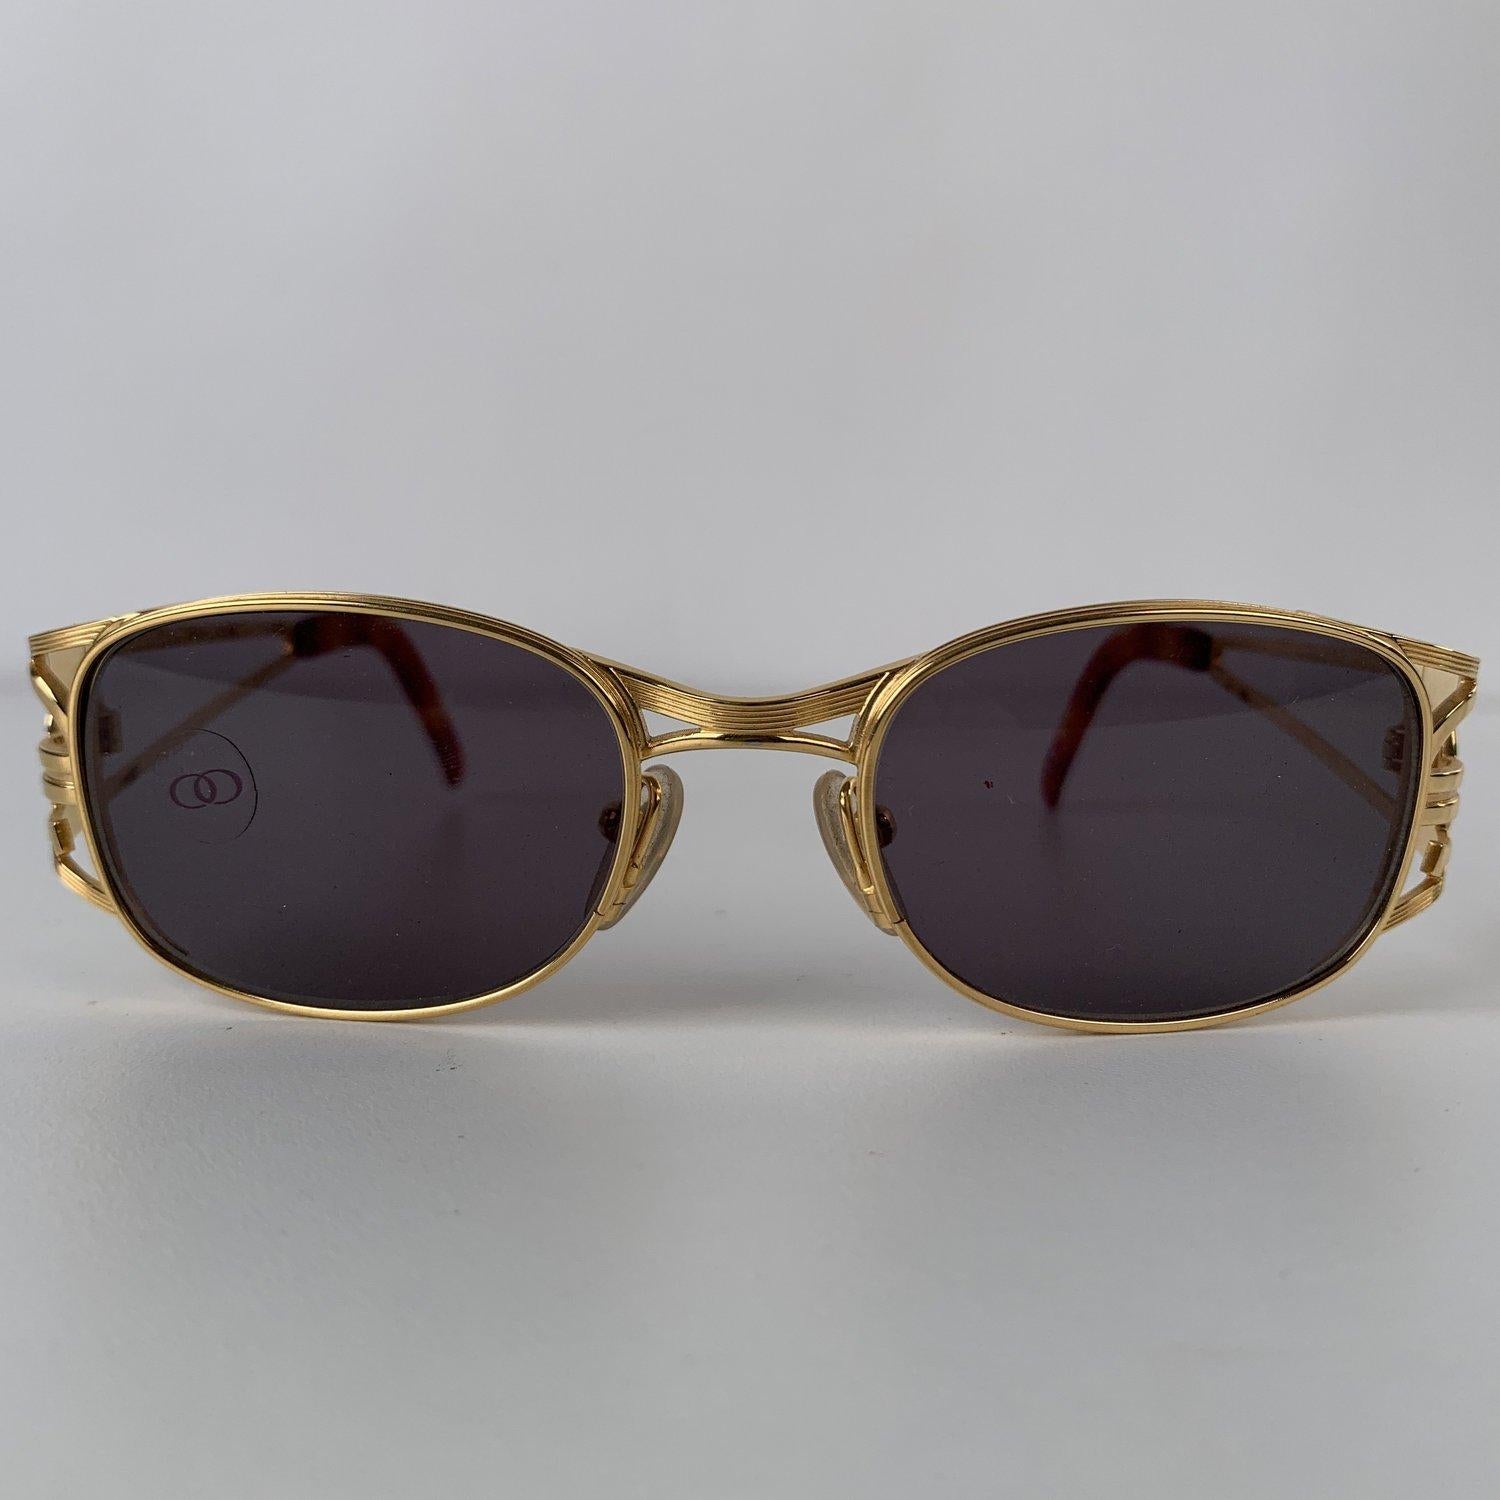 Jean Paul Gaultier Vintage Gold Tone Sunglasses Mod. 58-5101 4